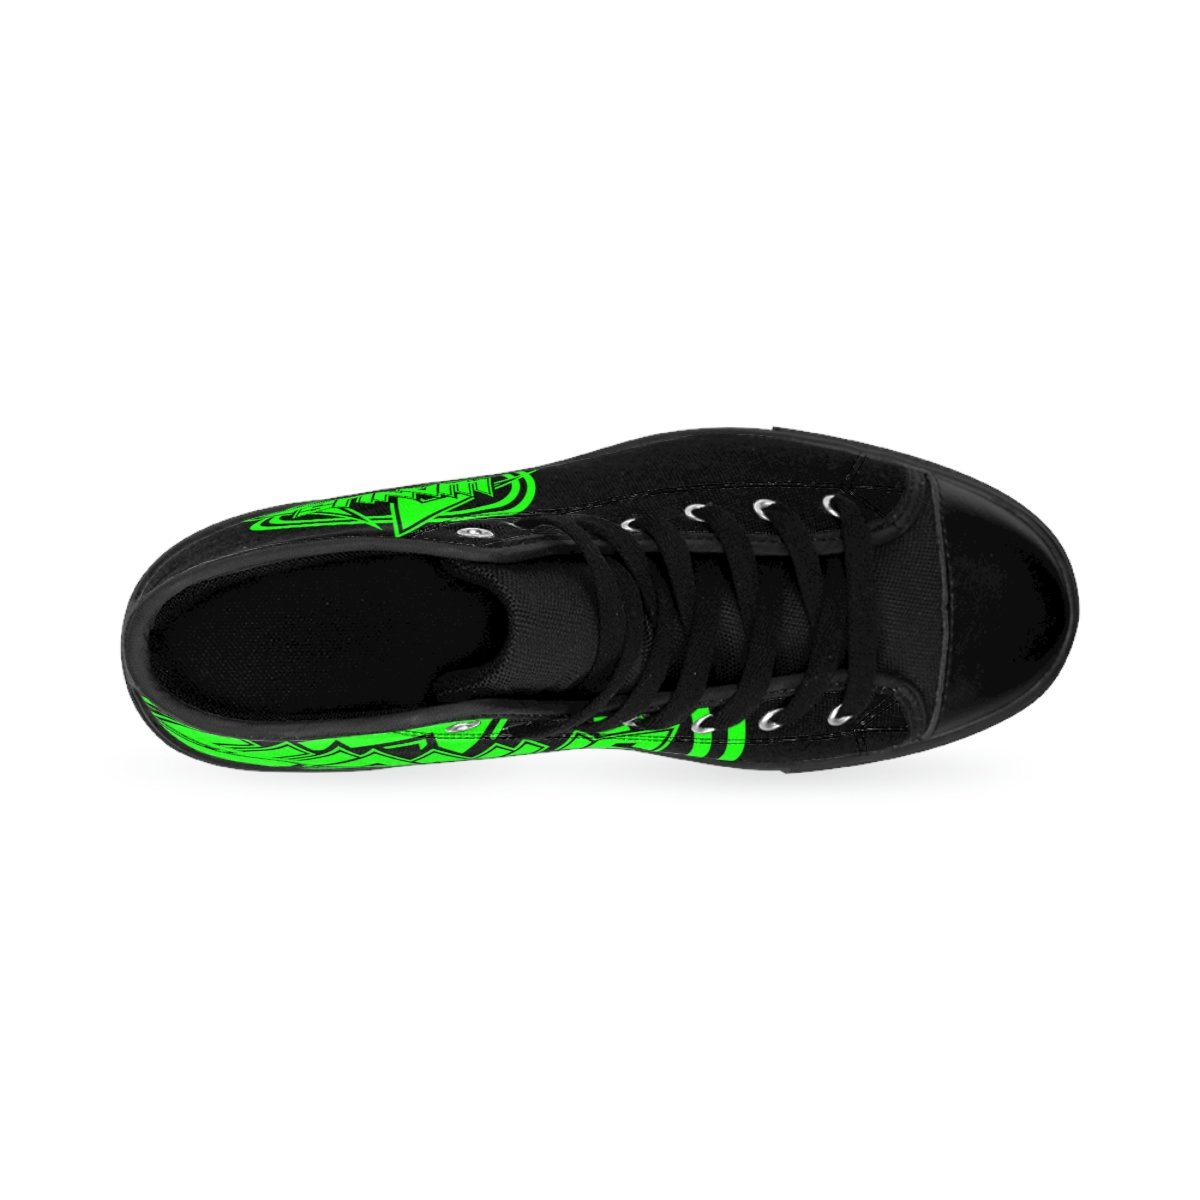 Wanus – Green Logo Men’s High-top Sneakers